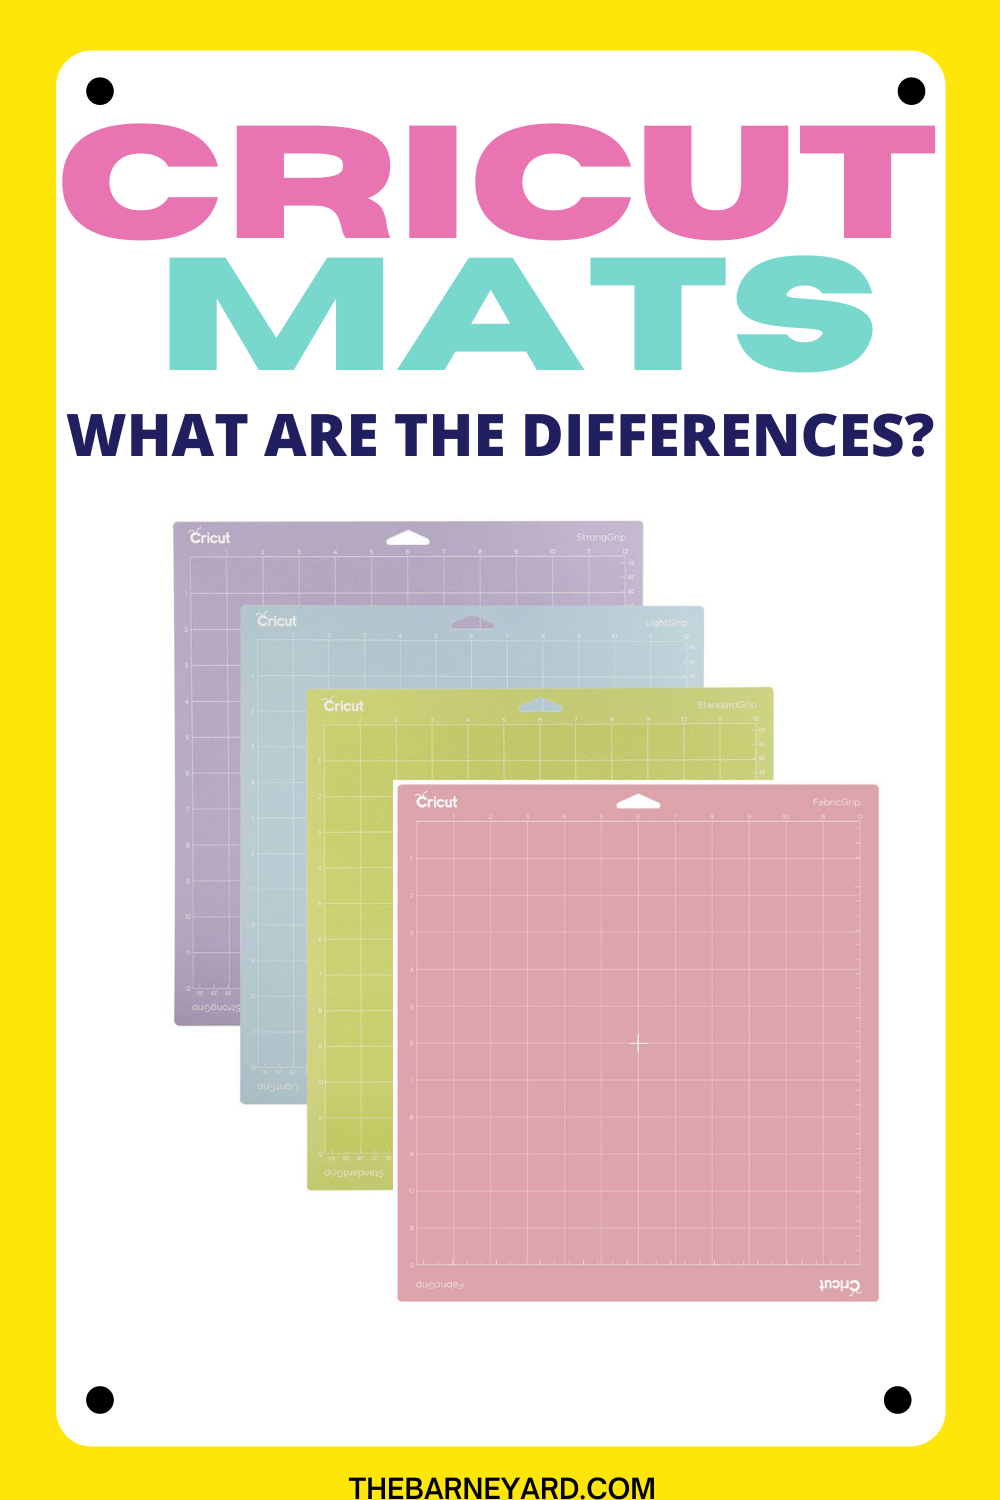 Cricut cutting mat: Which mat should I use? - The Barne Yard